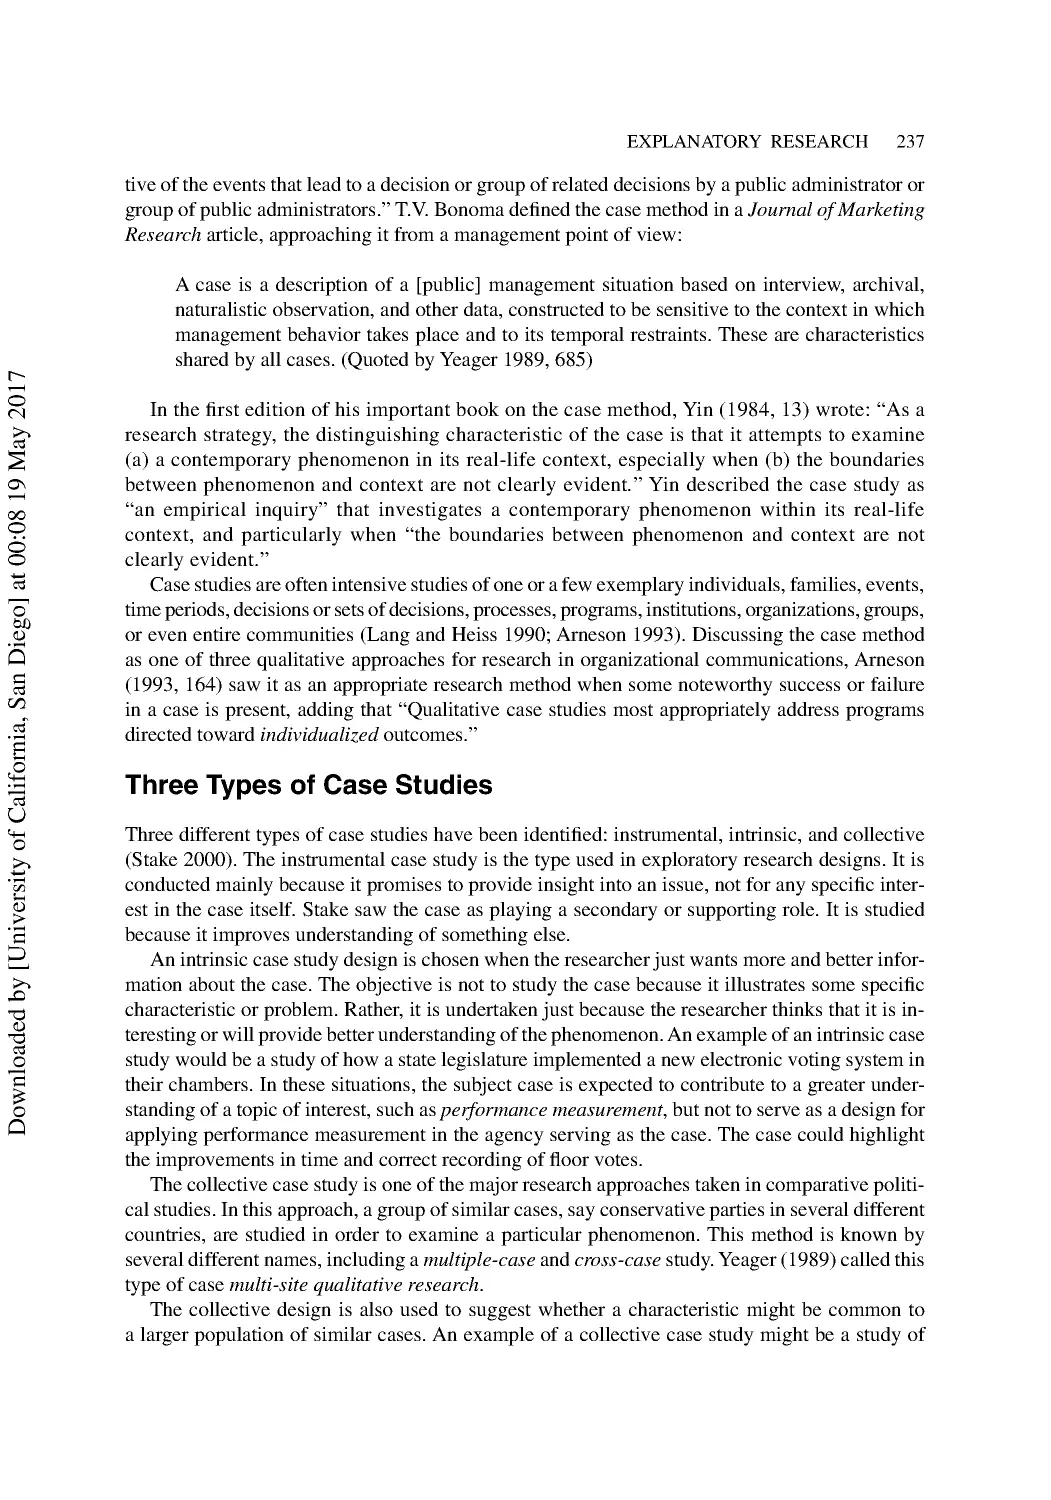 Three Types of Case Studies